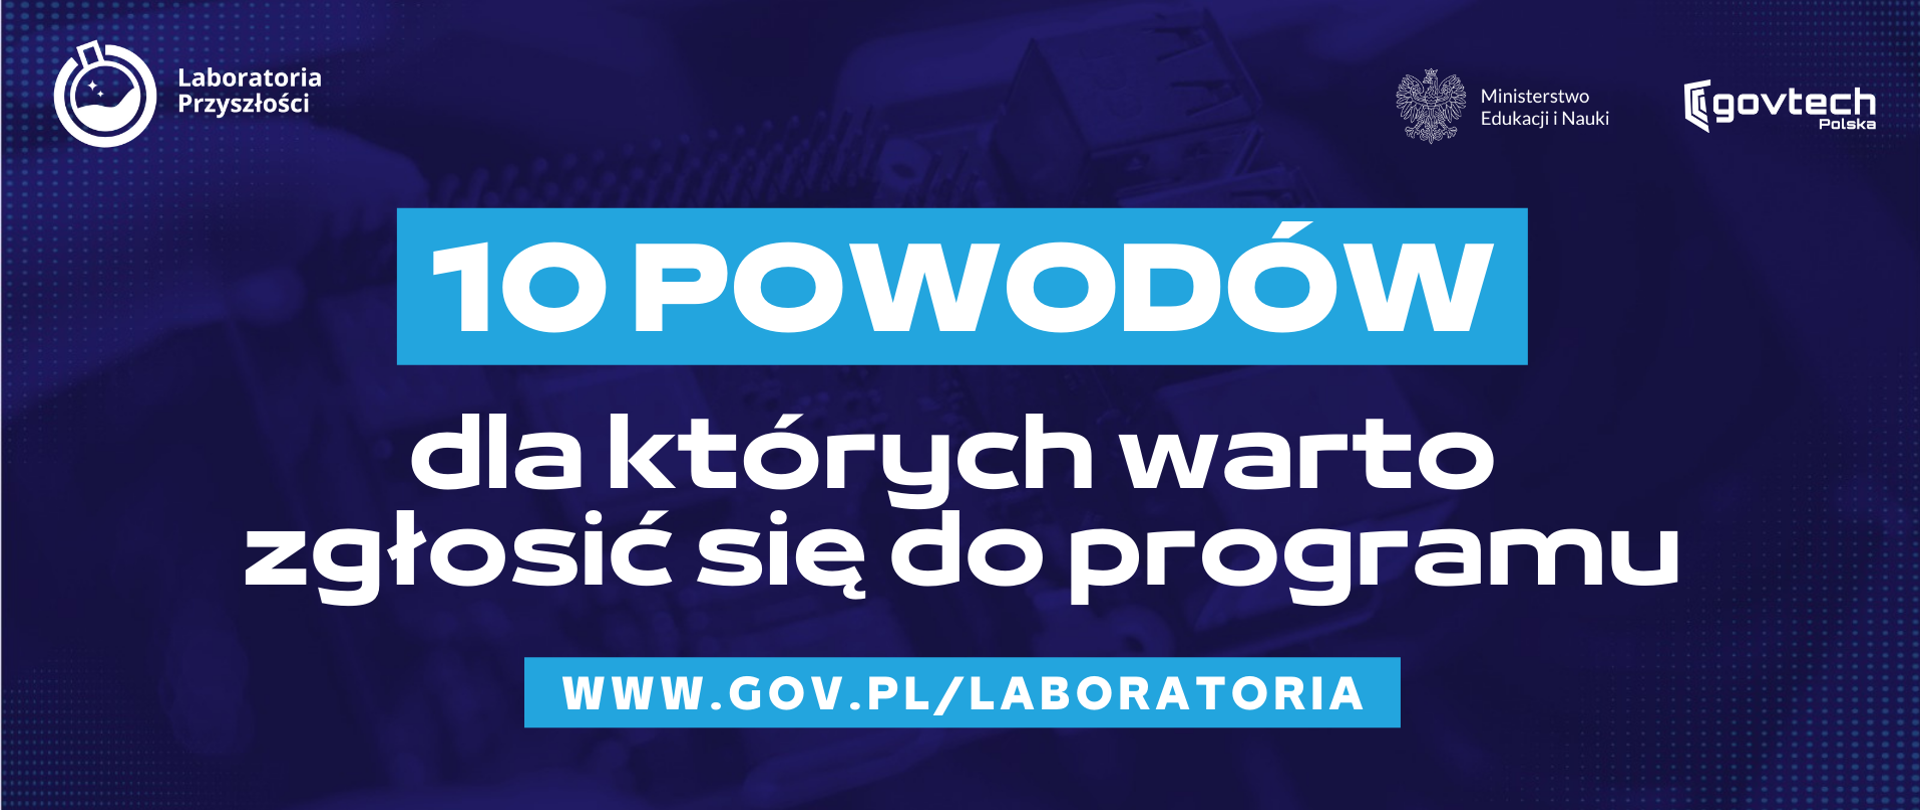 10 powodów
dla których warto zgłosić się do programu
www.gov.pl/laboratoria